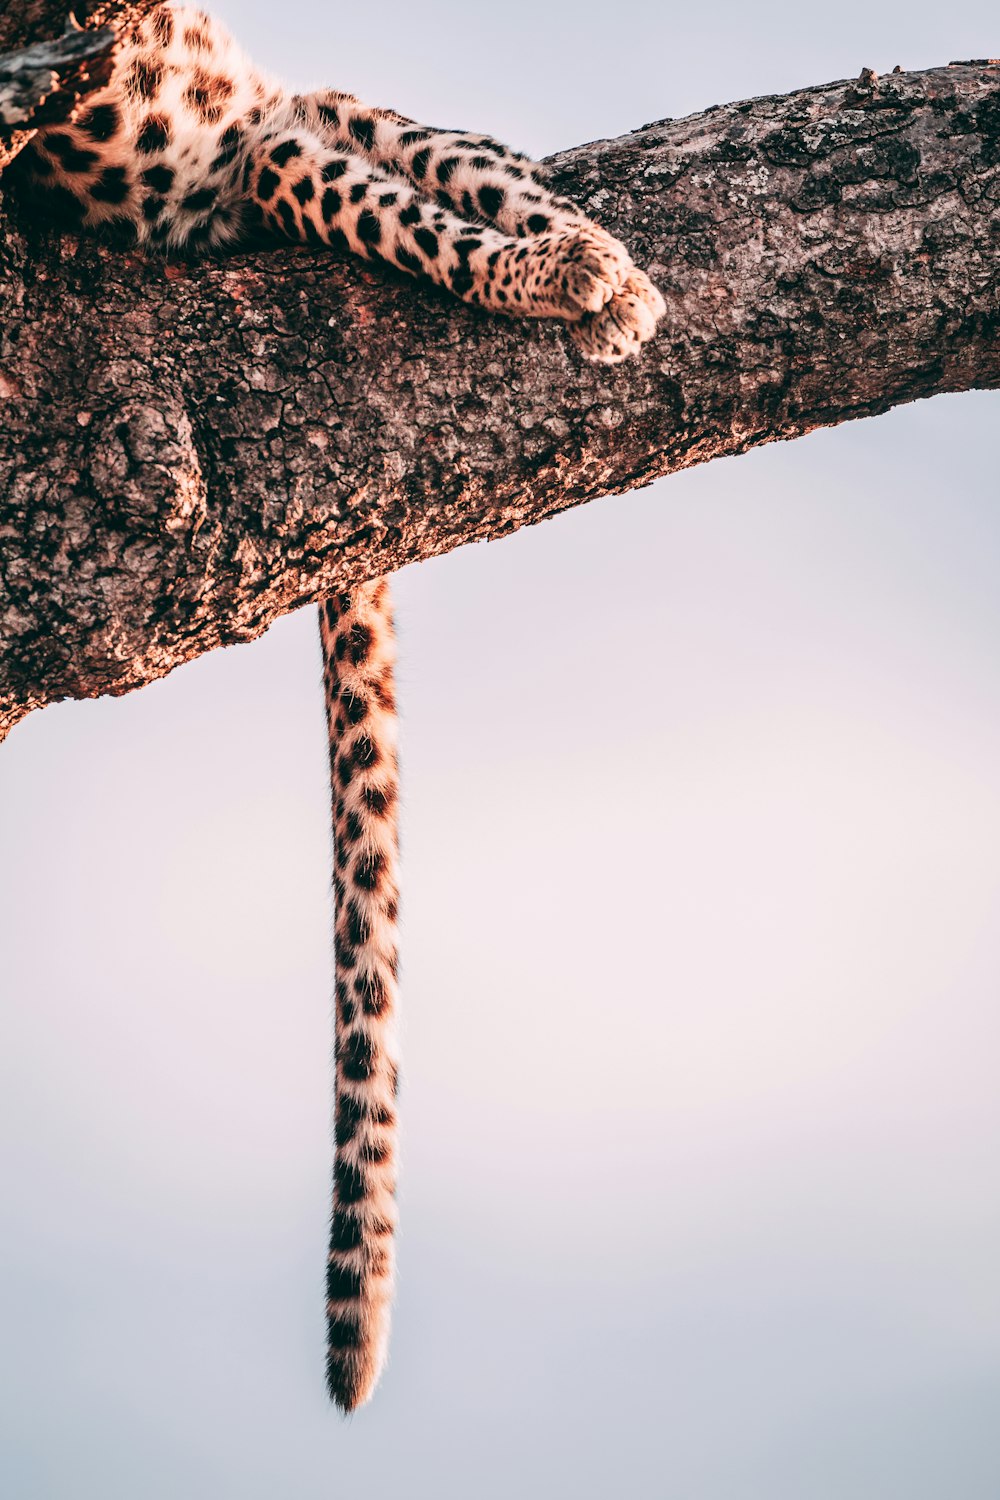 Photographie en gros plan léopard sur arbre